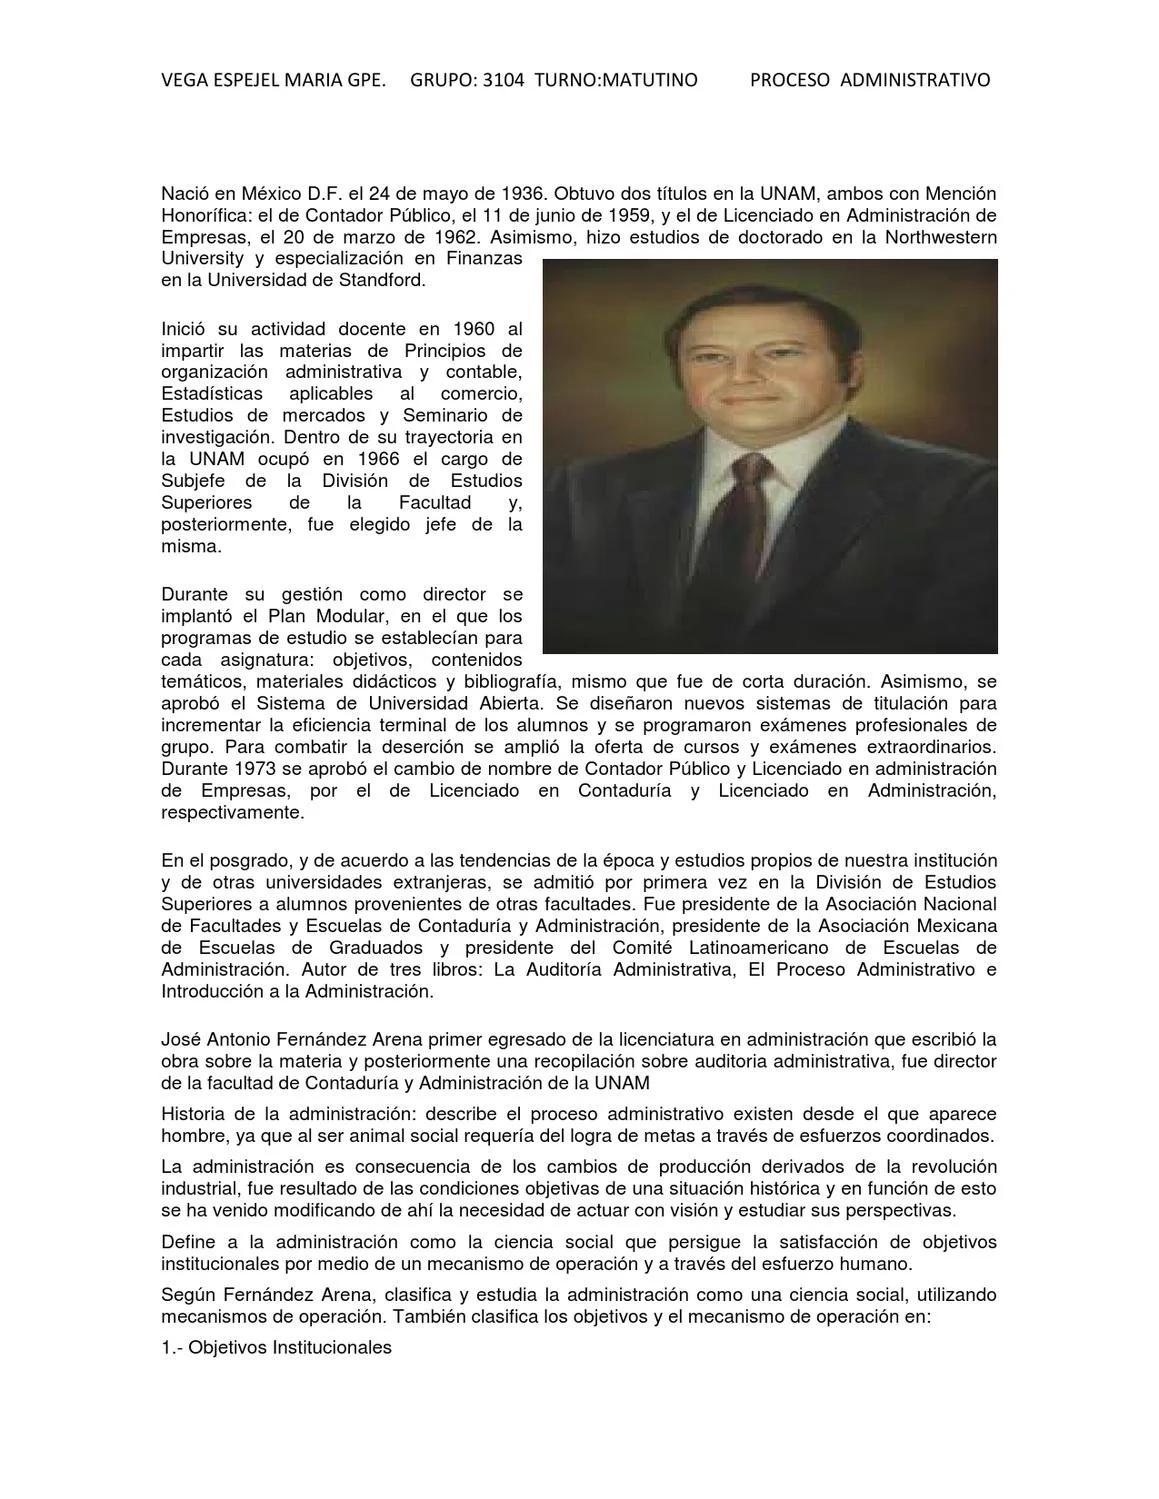 fernandez arenas auditoria administrativa - Qué es el proceso administrativo según Jose Antonio Fernández Arena